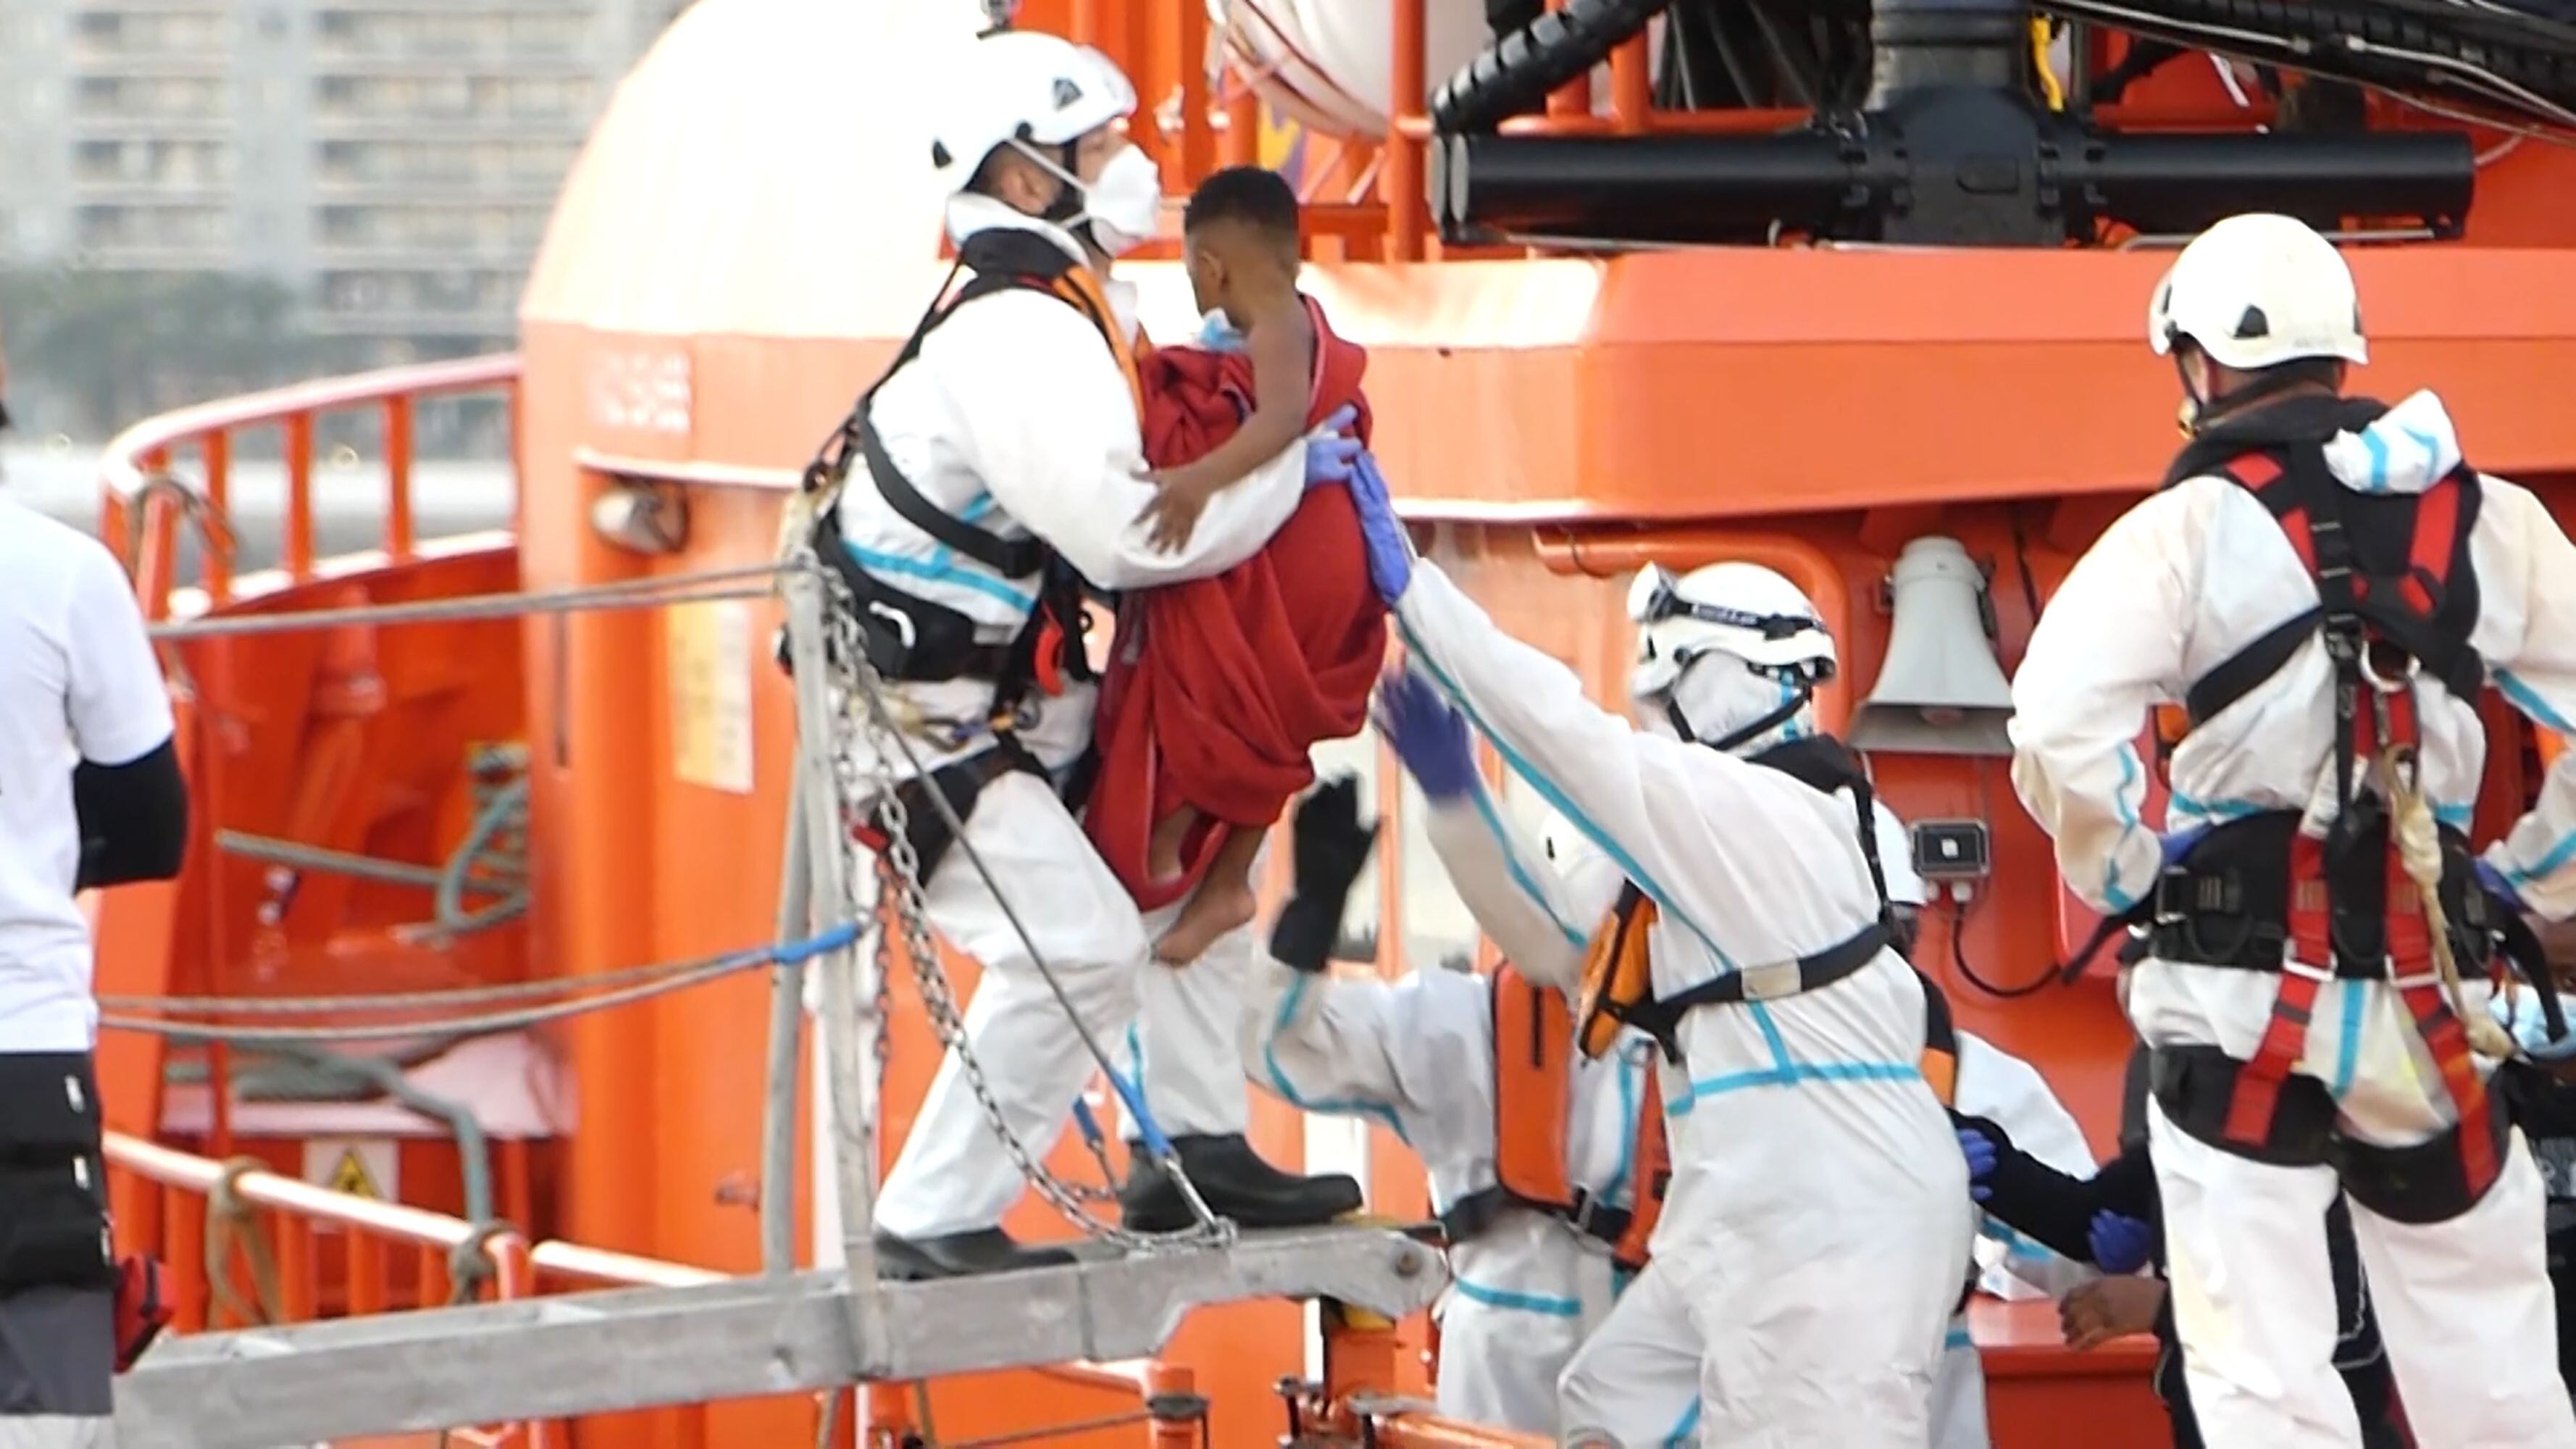 Un miembro de la Cruz Roja ayudaba a bajar del barco a un niño migrante en el puerto de Arguineguín (Gran Canaria, España) el 17 de marzo de 2021. 